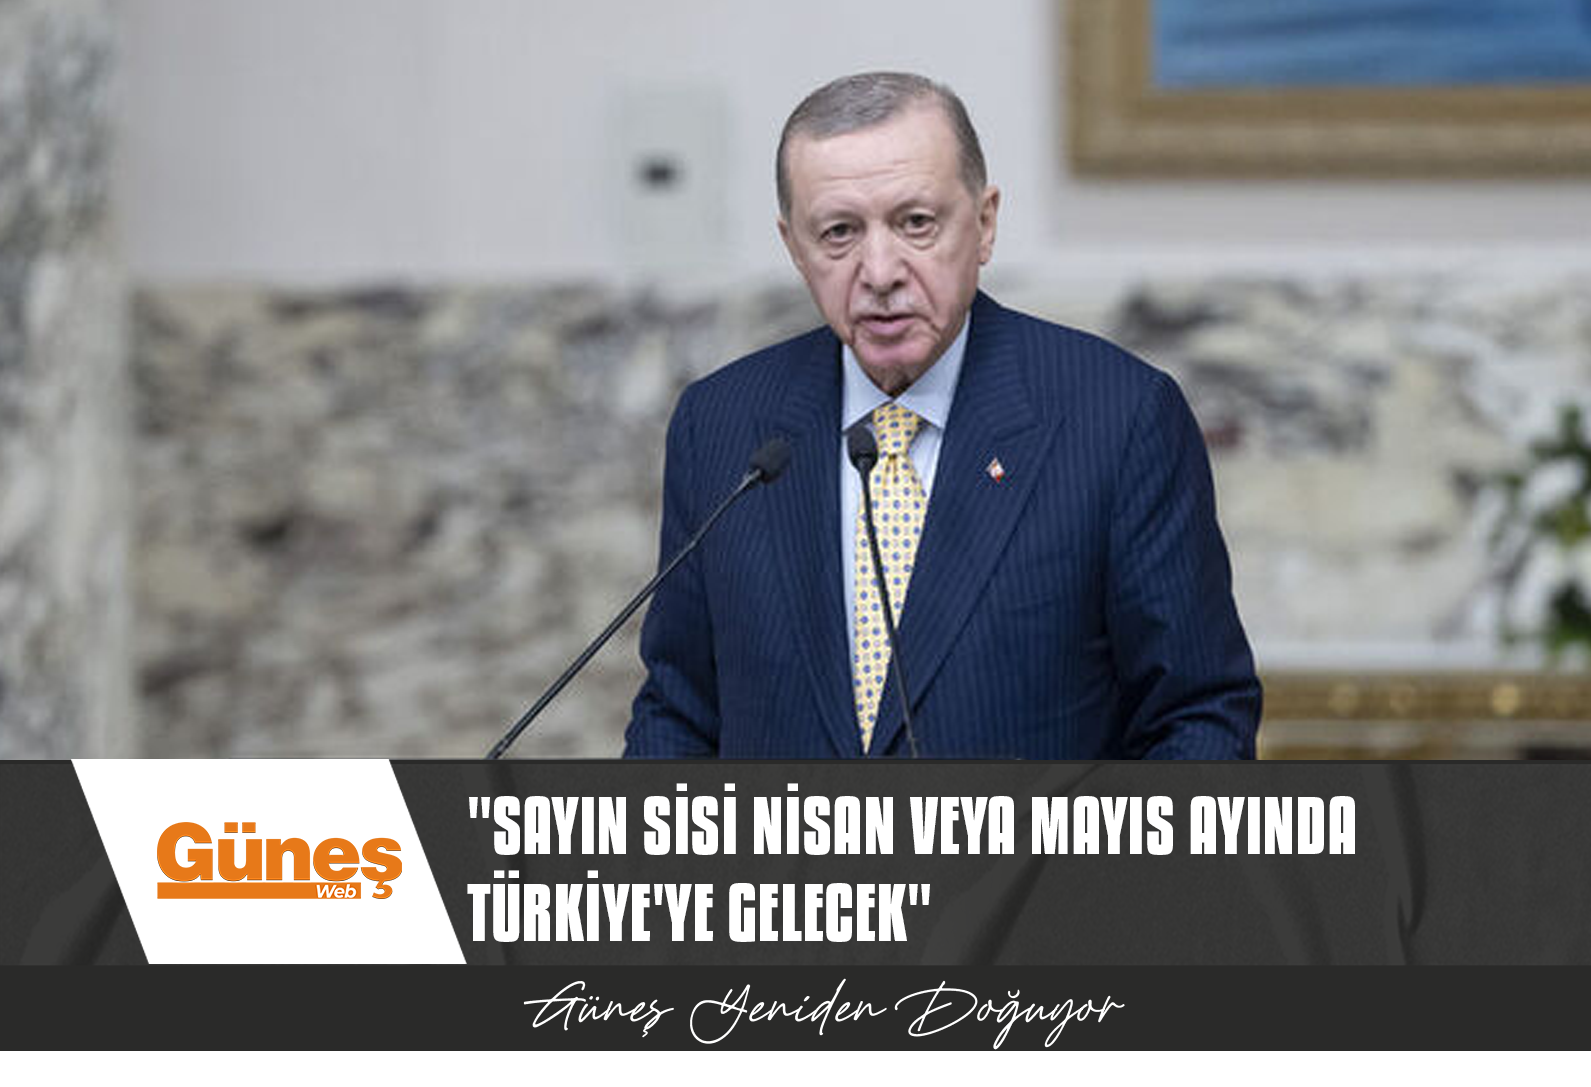 Erdoğan: Sayın Sisi Nisan veya Mayıs ayında Türkiye’ye gelecek